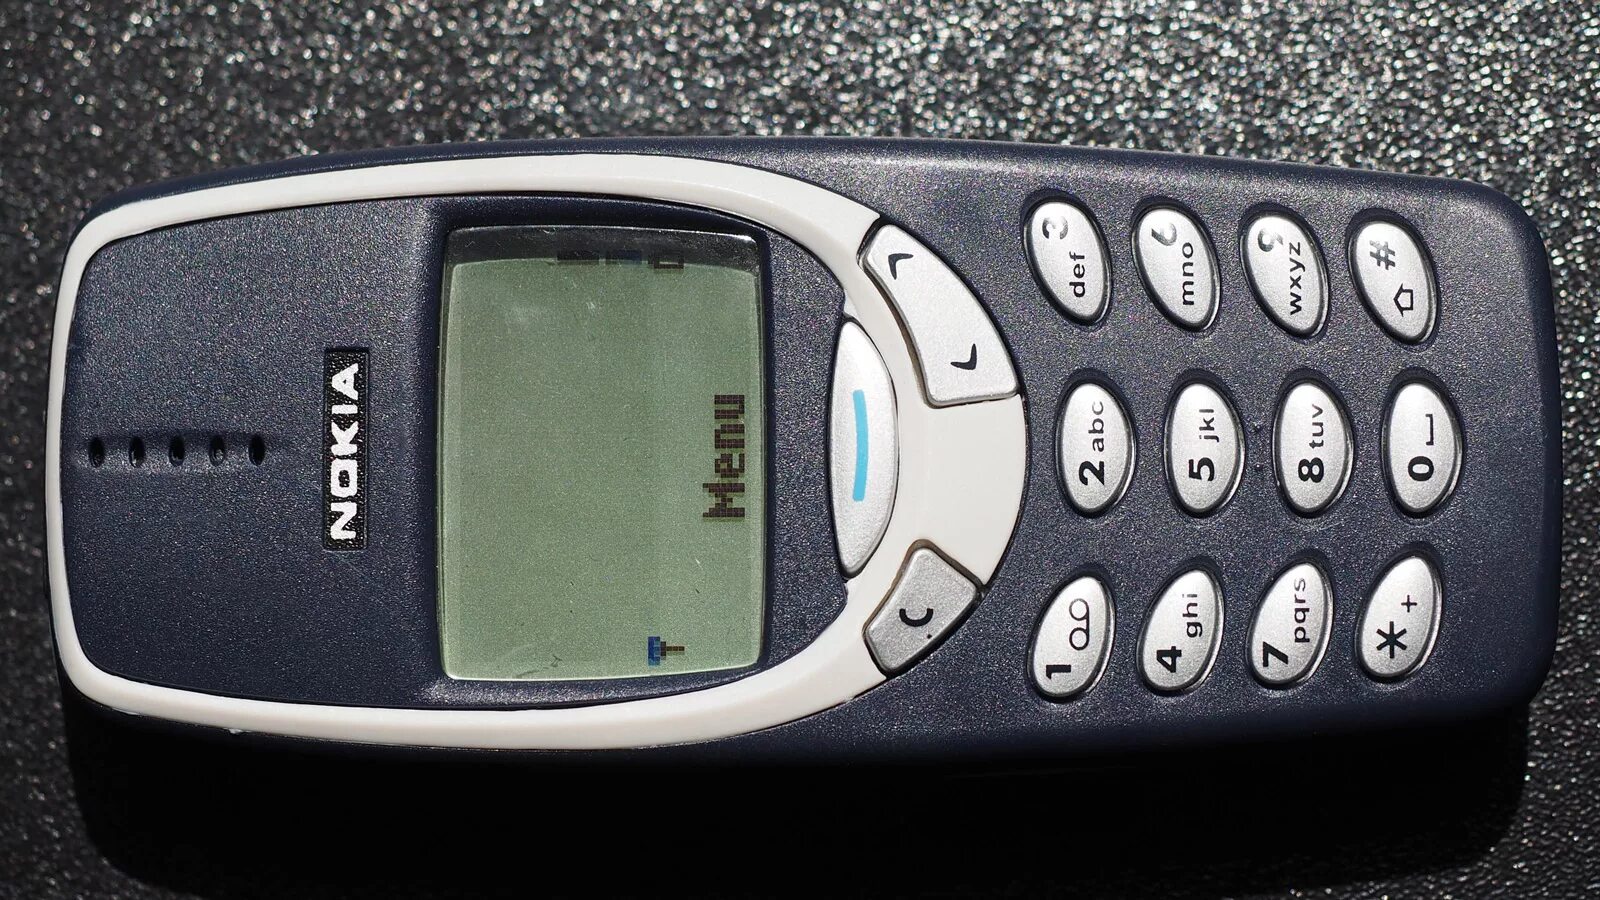 33 10. Nokia 3310 2000. Nokia 3310 1998. Nokia 3310 2003. Nokia 3310 Black.